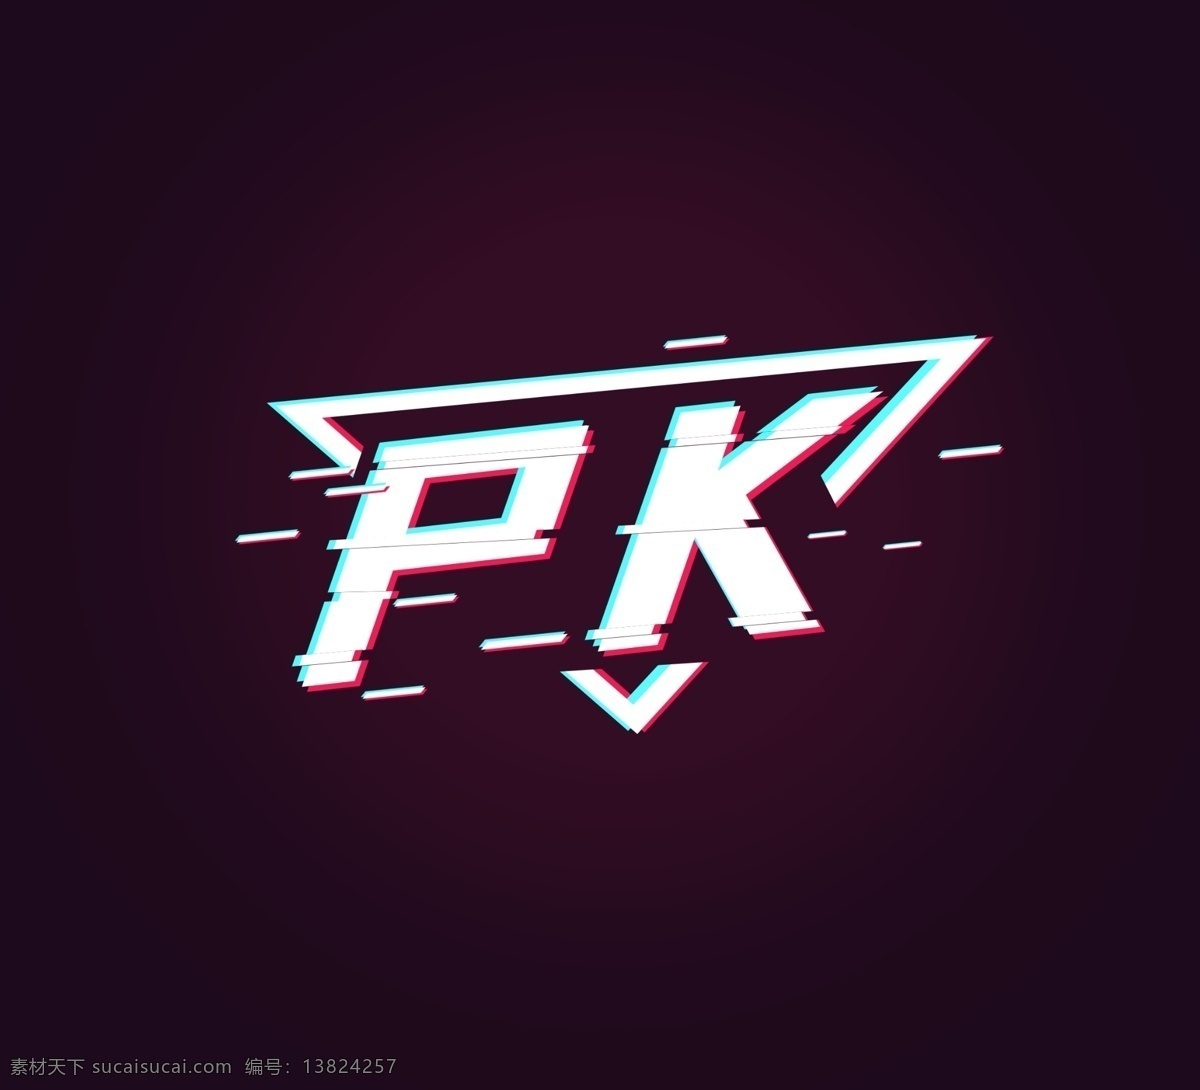 pk 比赛 字形 字体 主题 图形 字形标志